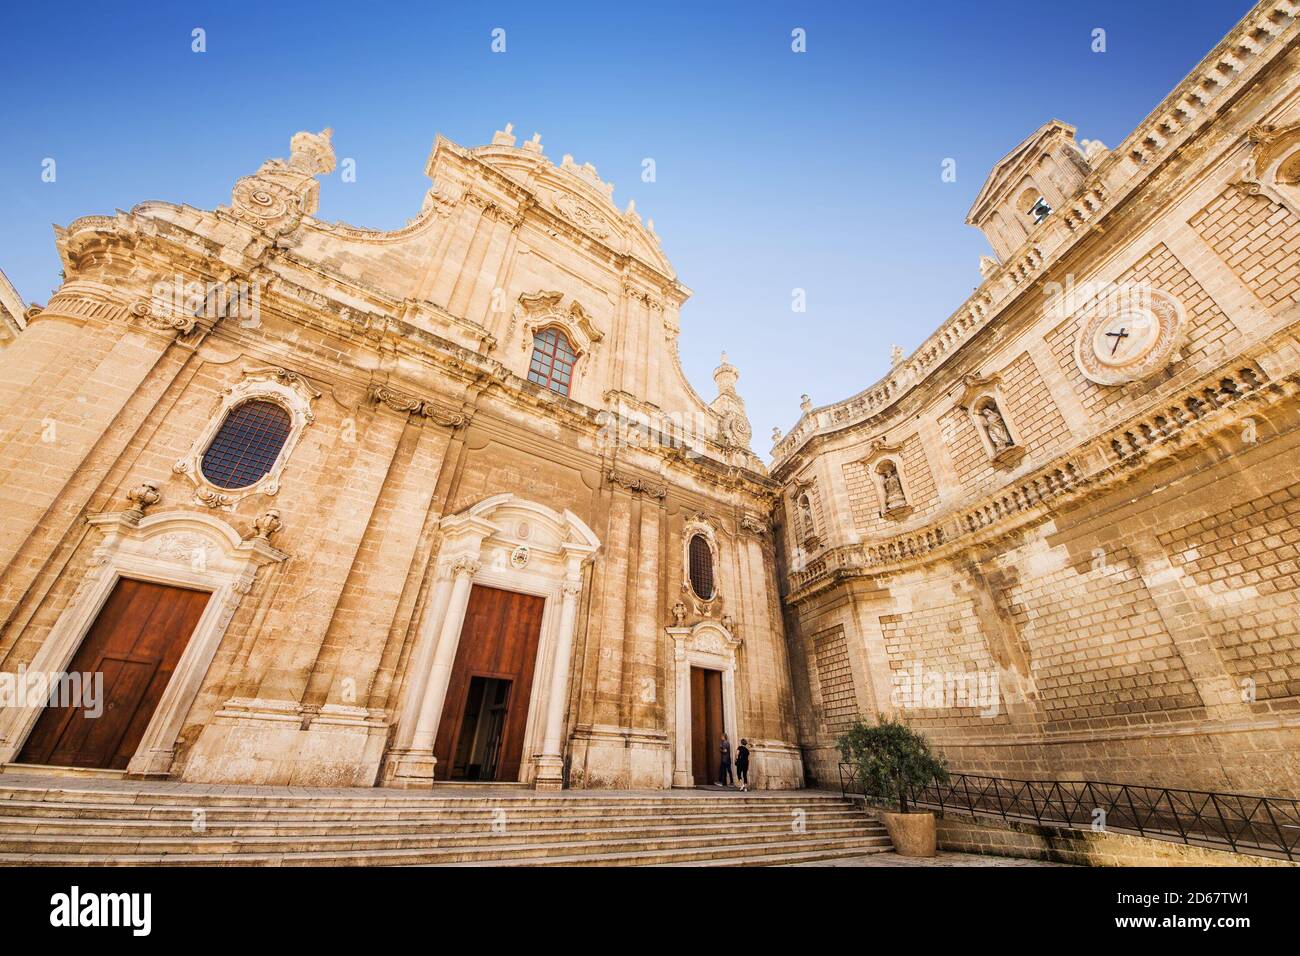 A wide angle shot of the cathedral Maria Santissima della Madia in Monopoli, Puglia, Italy Stock Photo